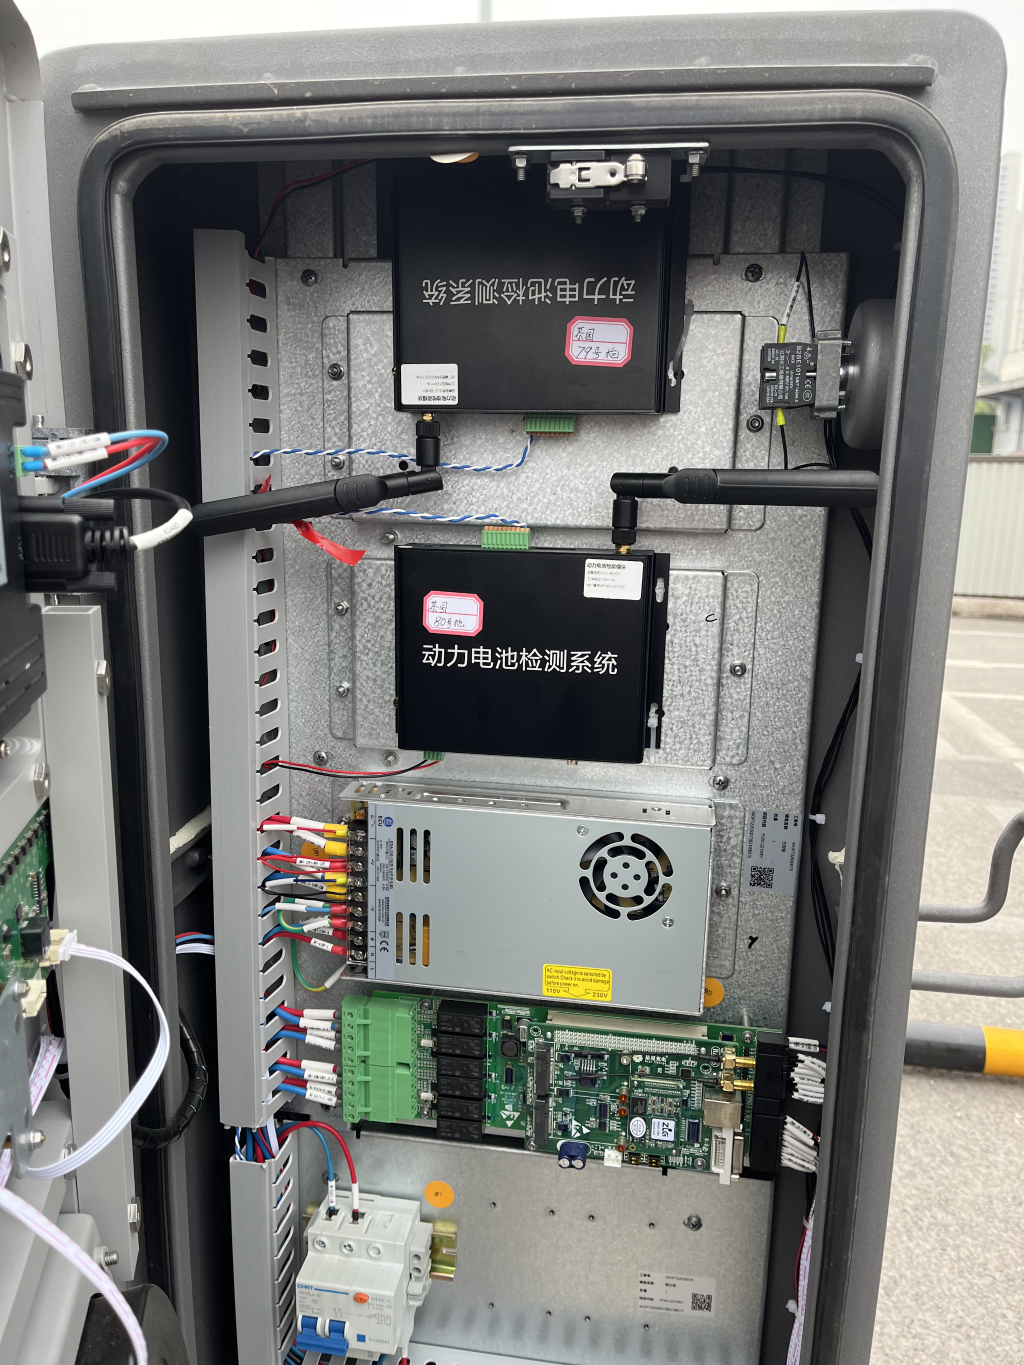 重庆星充场站充电桩动力电池检测模块安装完成。企业供图